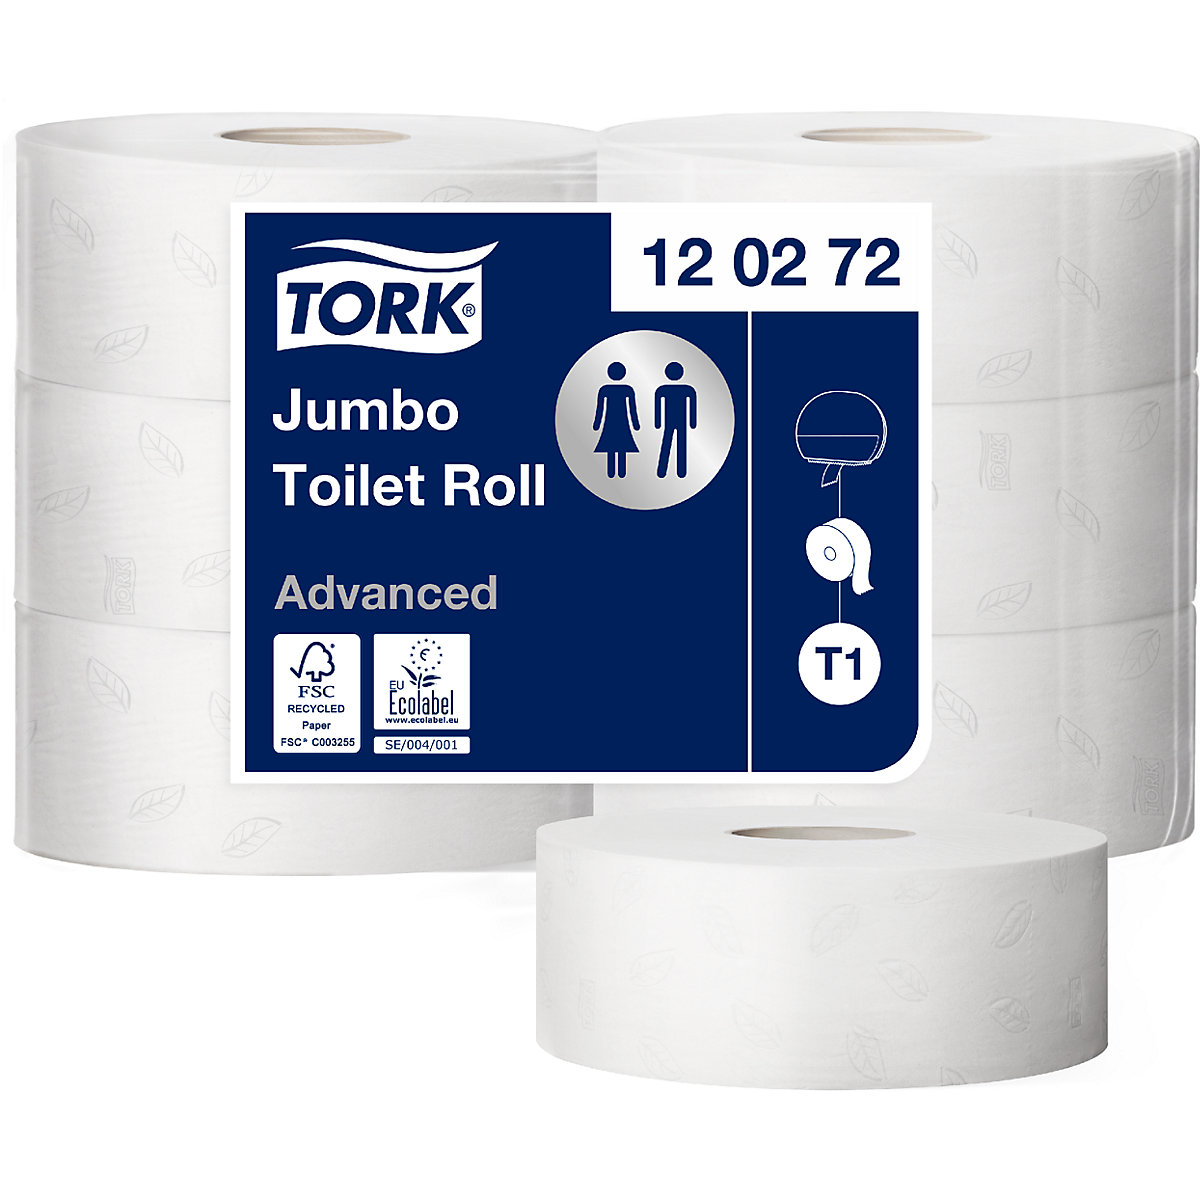 Rouleau de papier hygiénique de taille industrielle Jumbo - TORK